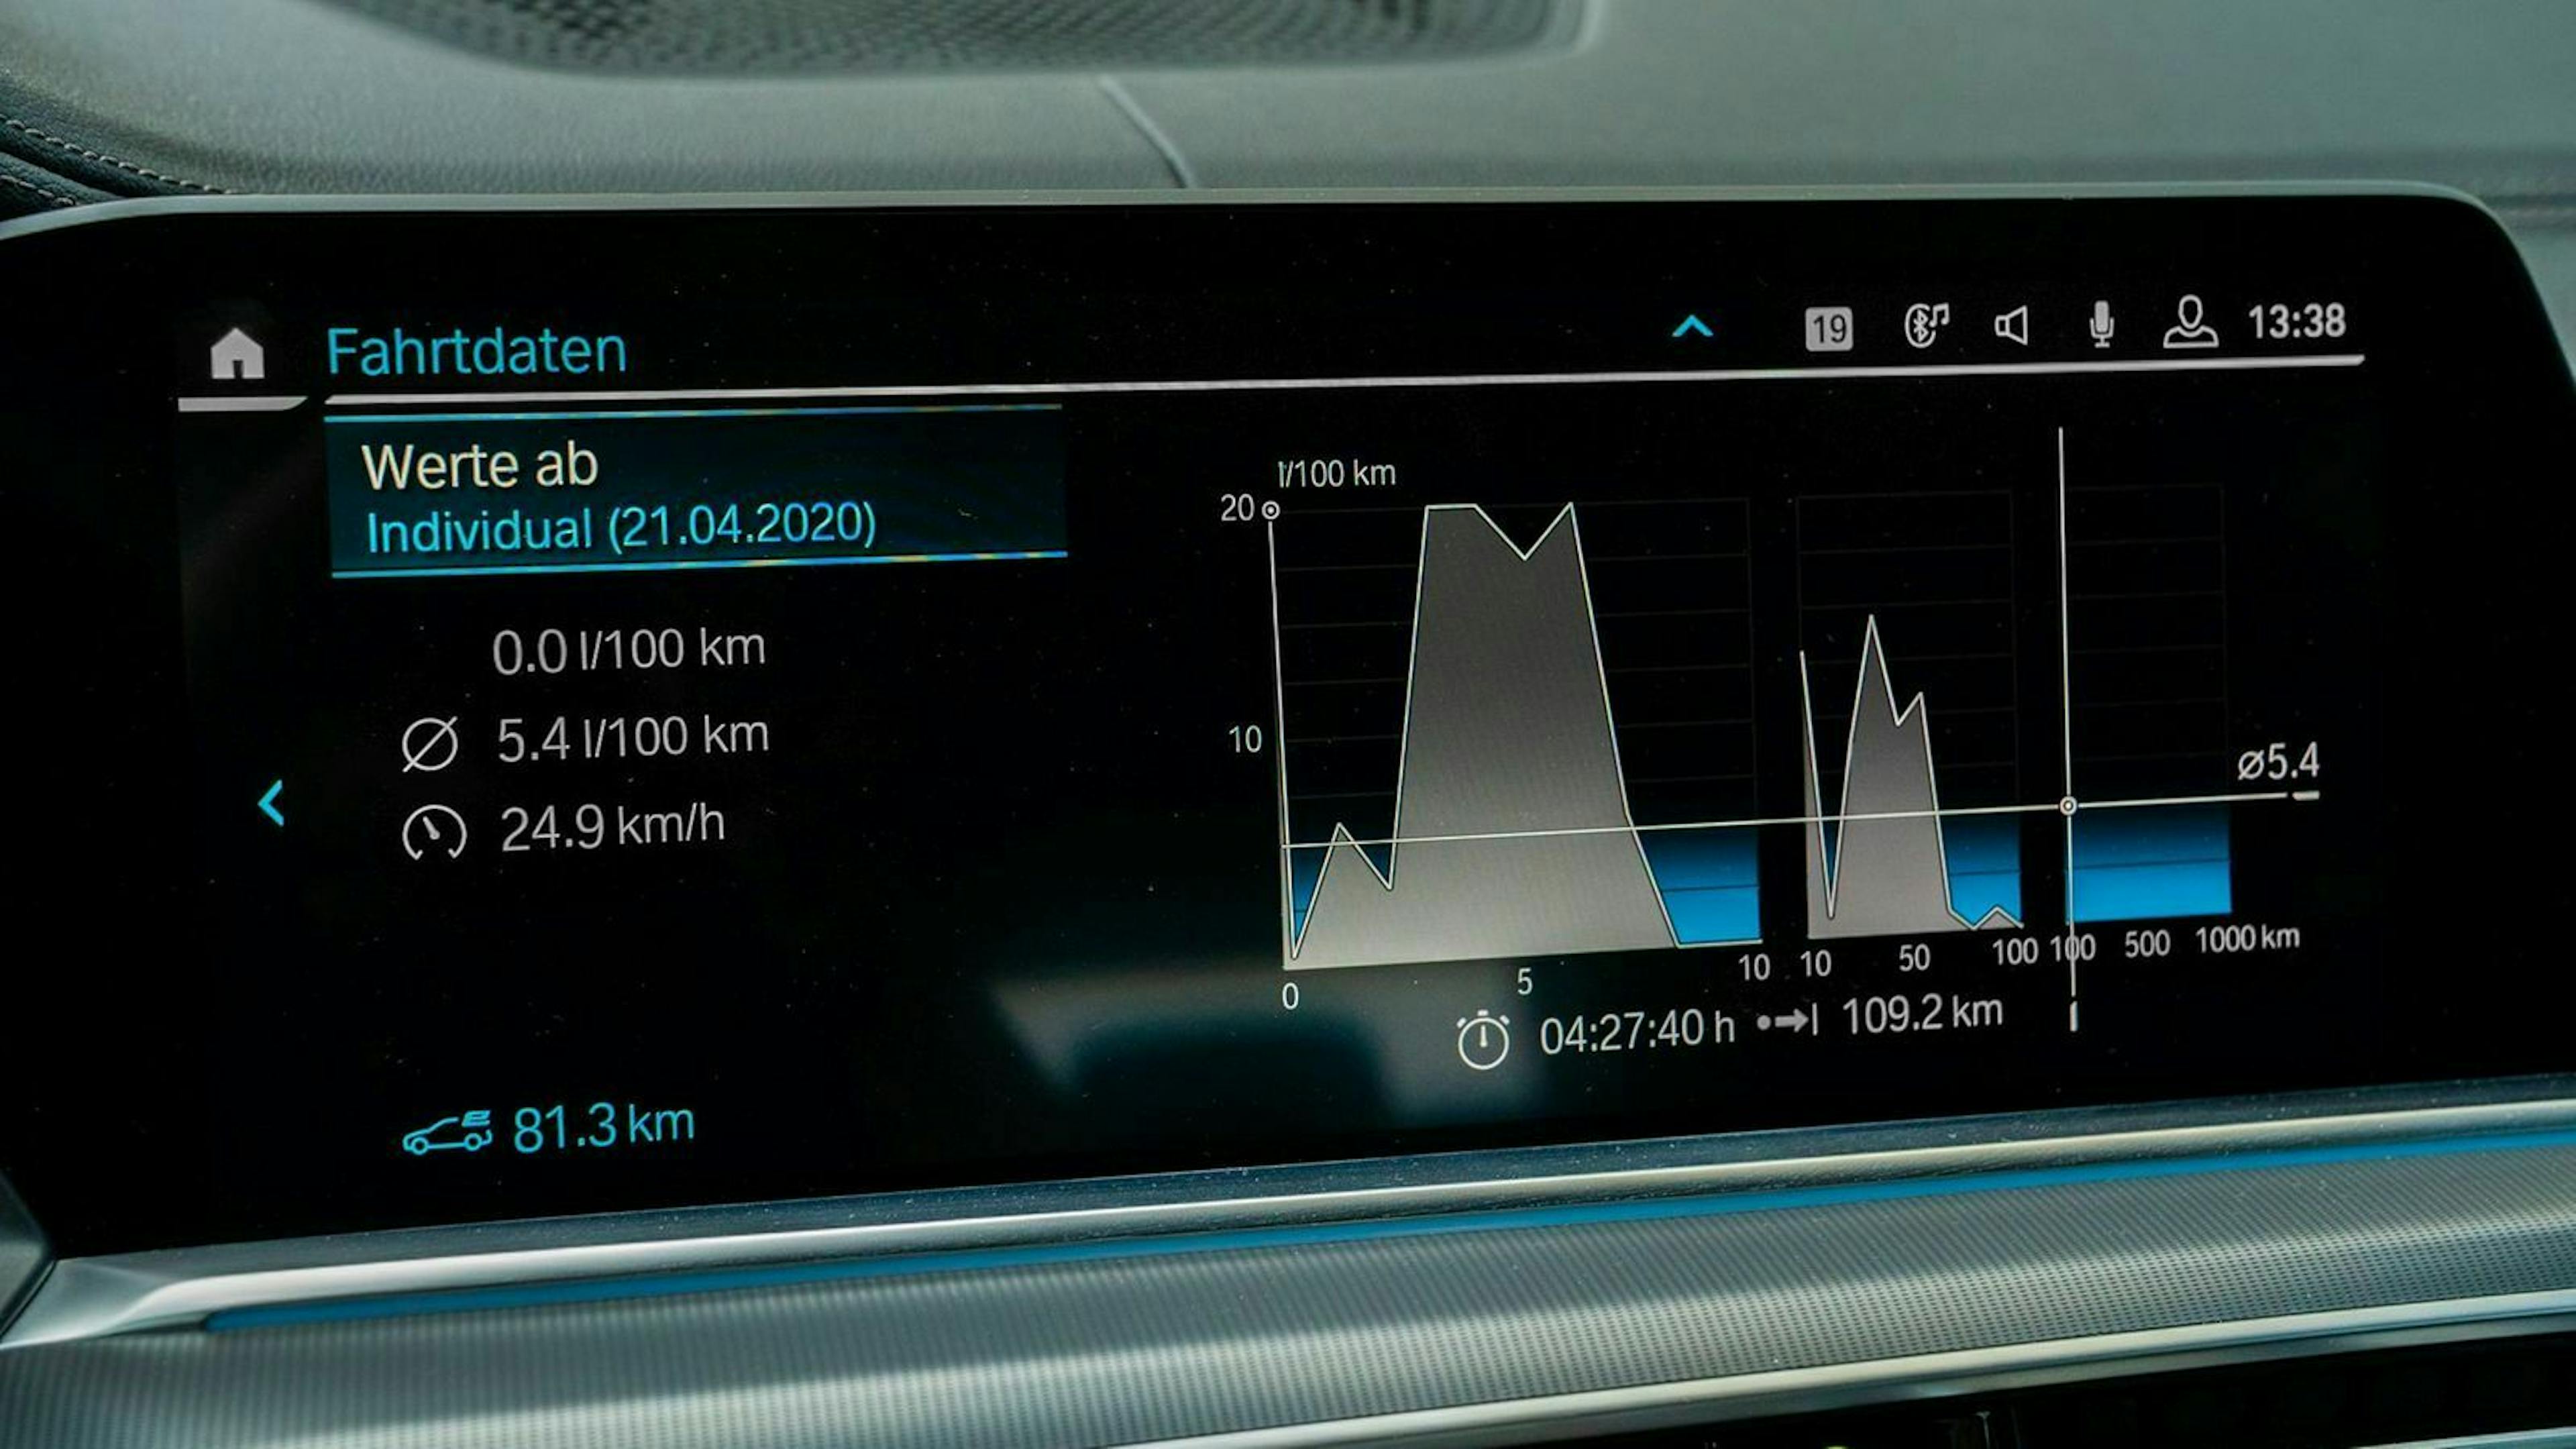 Zu sehen ist das Infotainment-Display des BMW X5